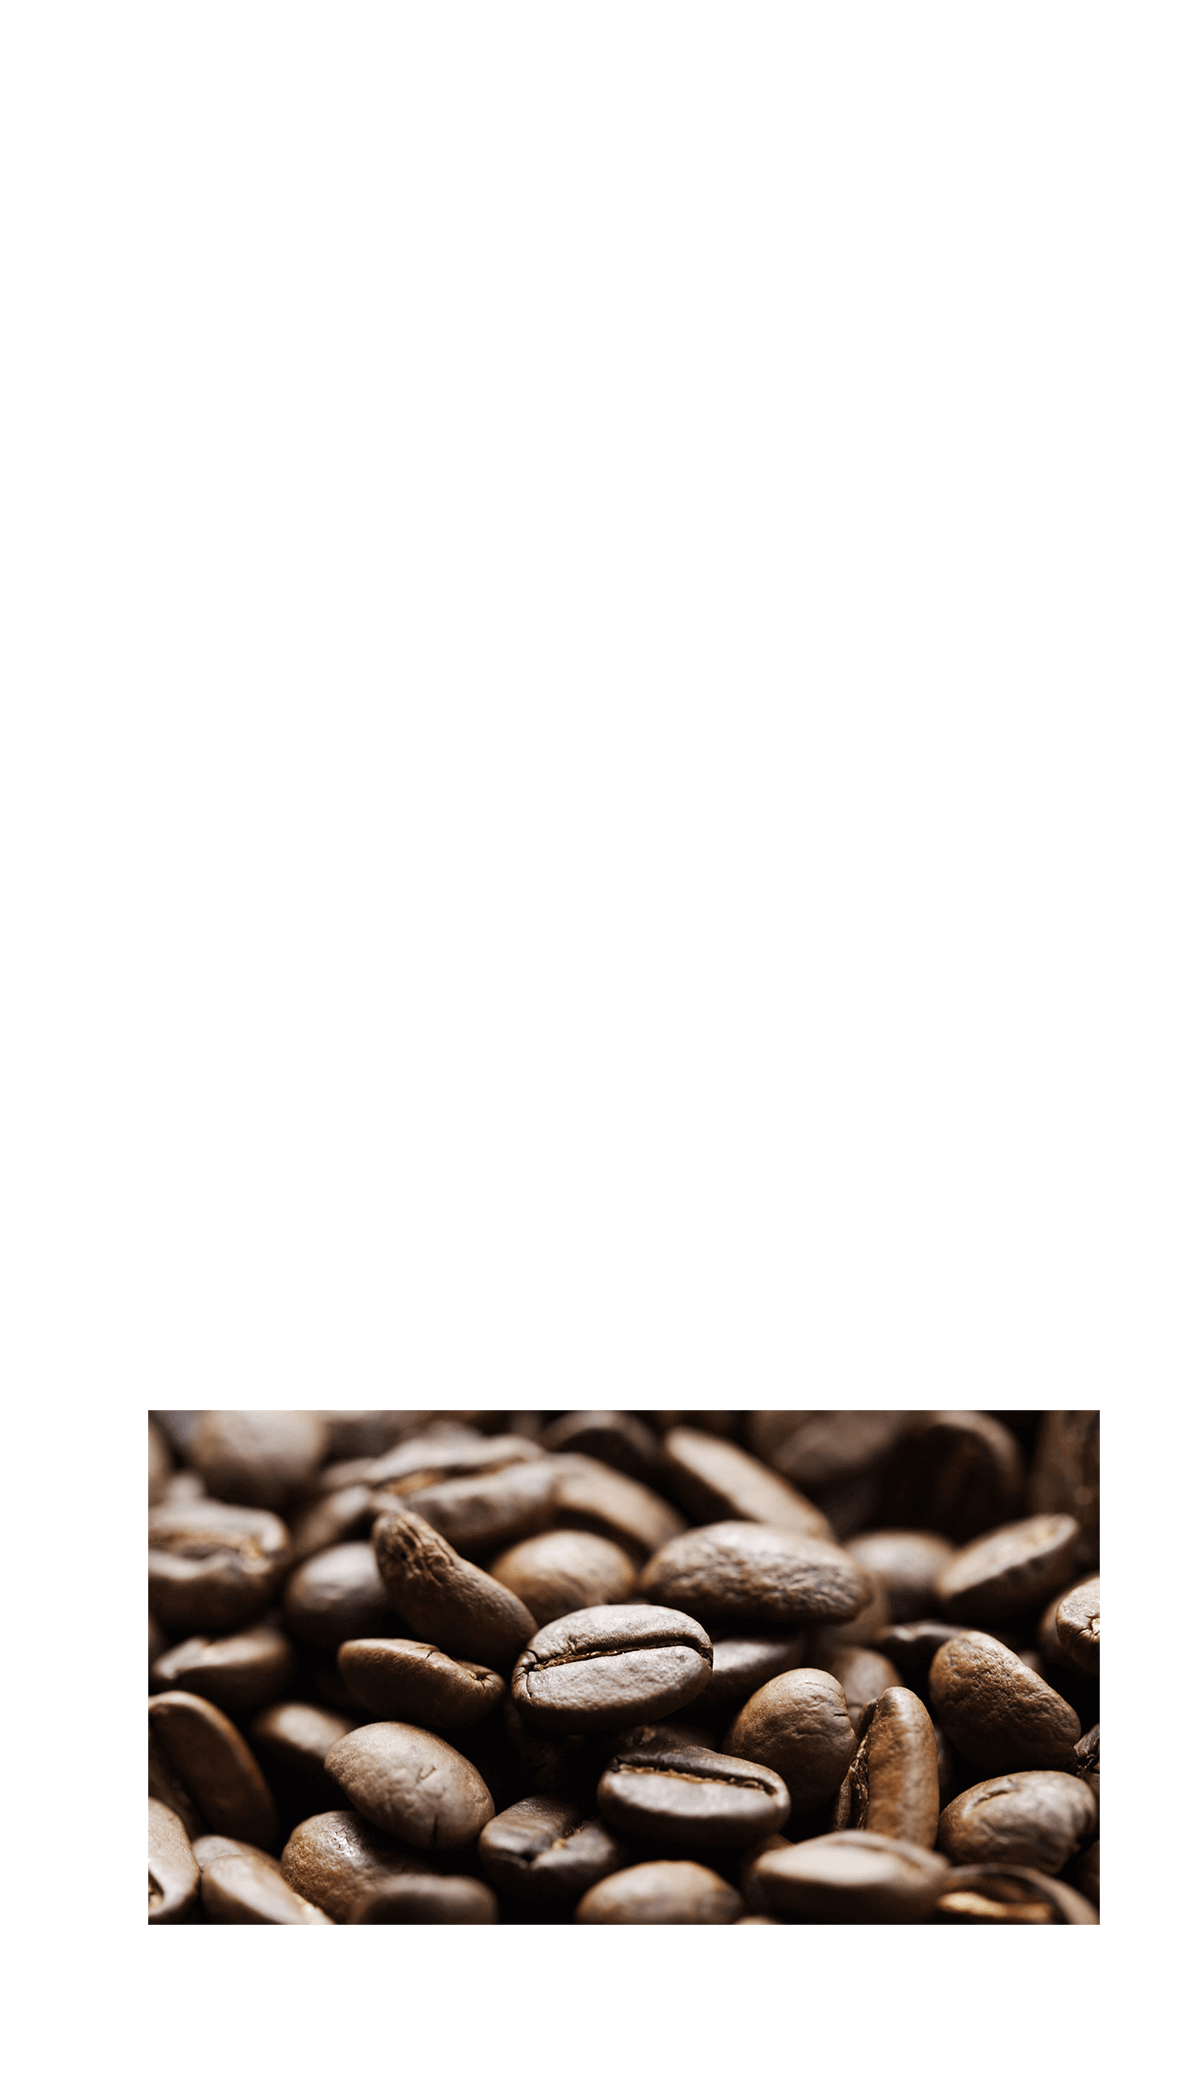 香料無添加　香料を使用することなく、コーヒー本来の香り高さと味わいを実現。BLACK無糖は「原材料：コーヒー、以上。※」を長年守り続けています。　※写真はイメージです※食品表示基準における原材料名の表記です。